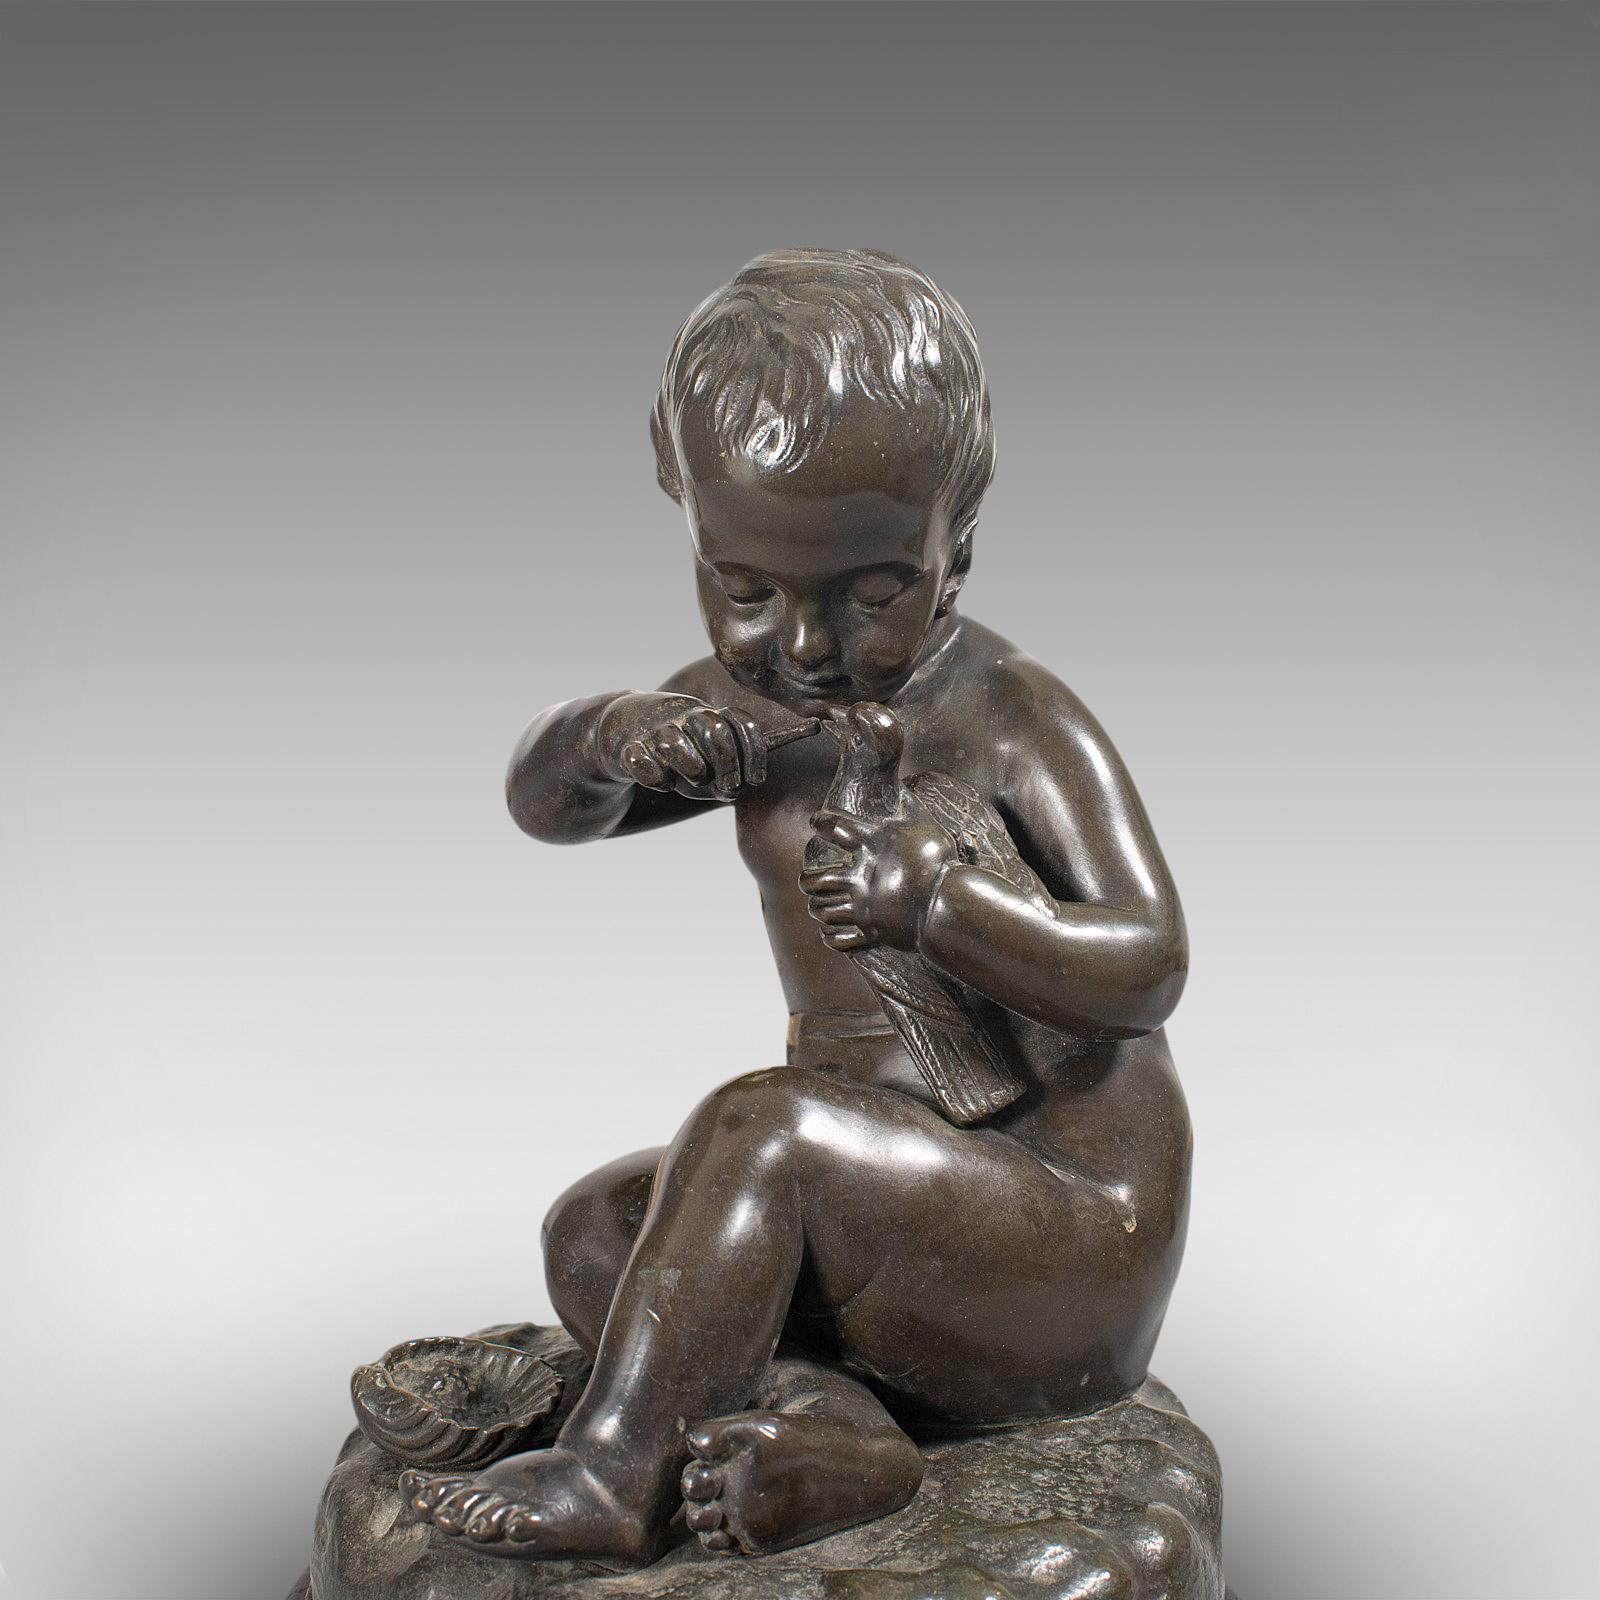 Antique Putto Statue, French, Bronze, Cherub Figure, Late 19th Century For Sale 4